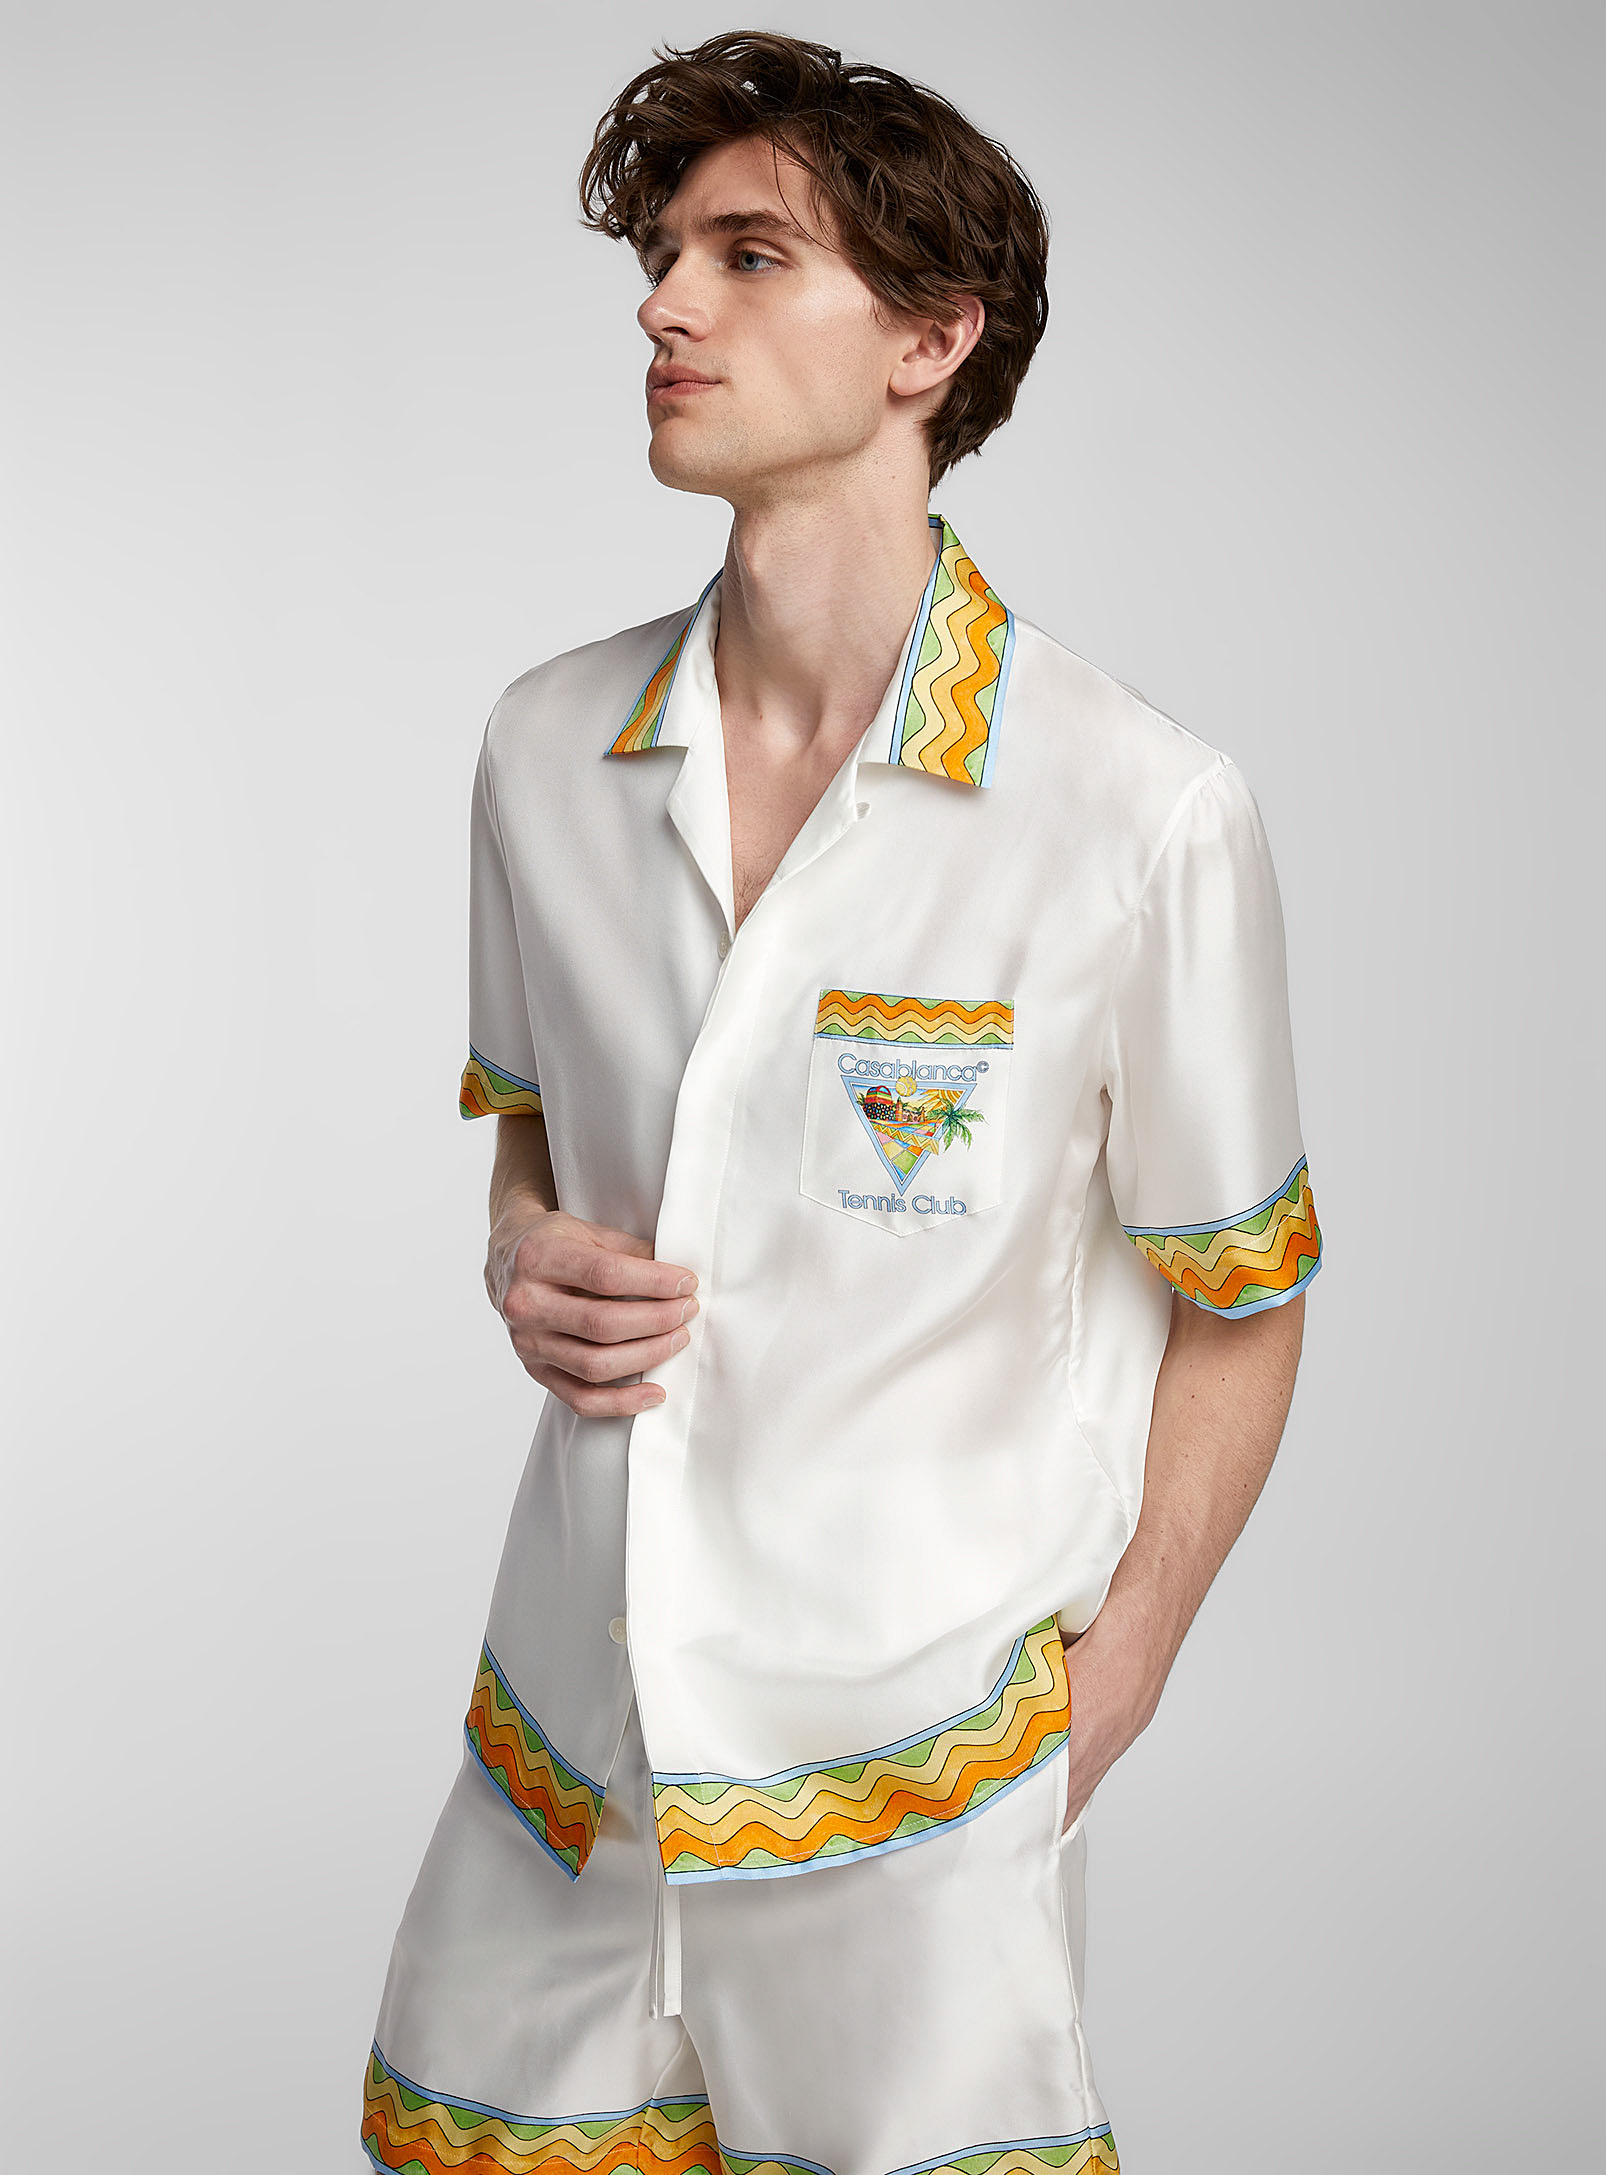 Casablanca - La chemise soyeuse Tennis Club Afro Cubism